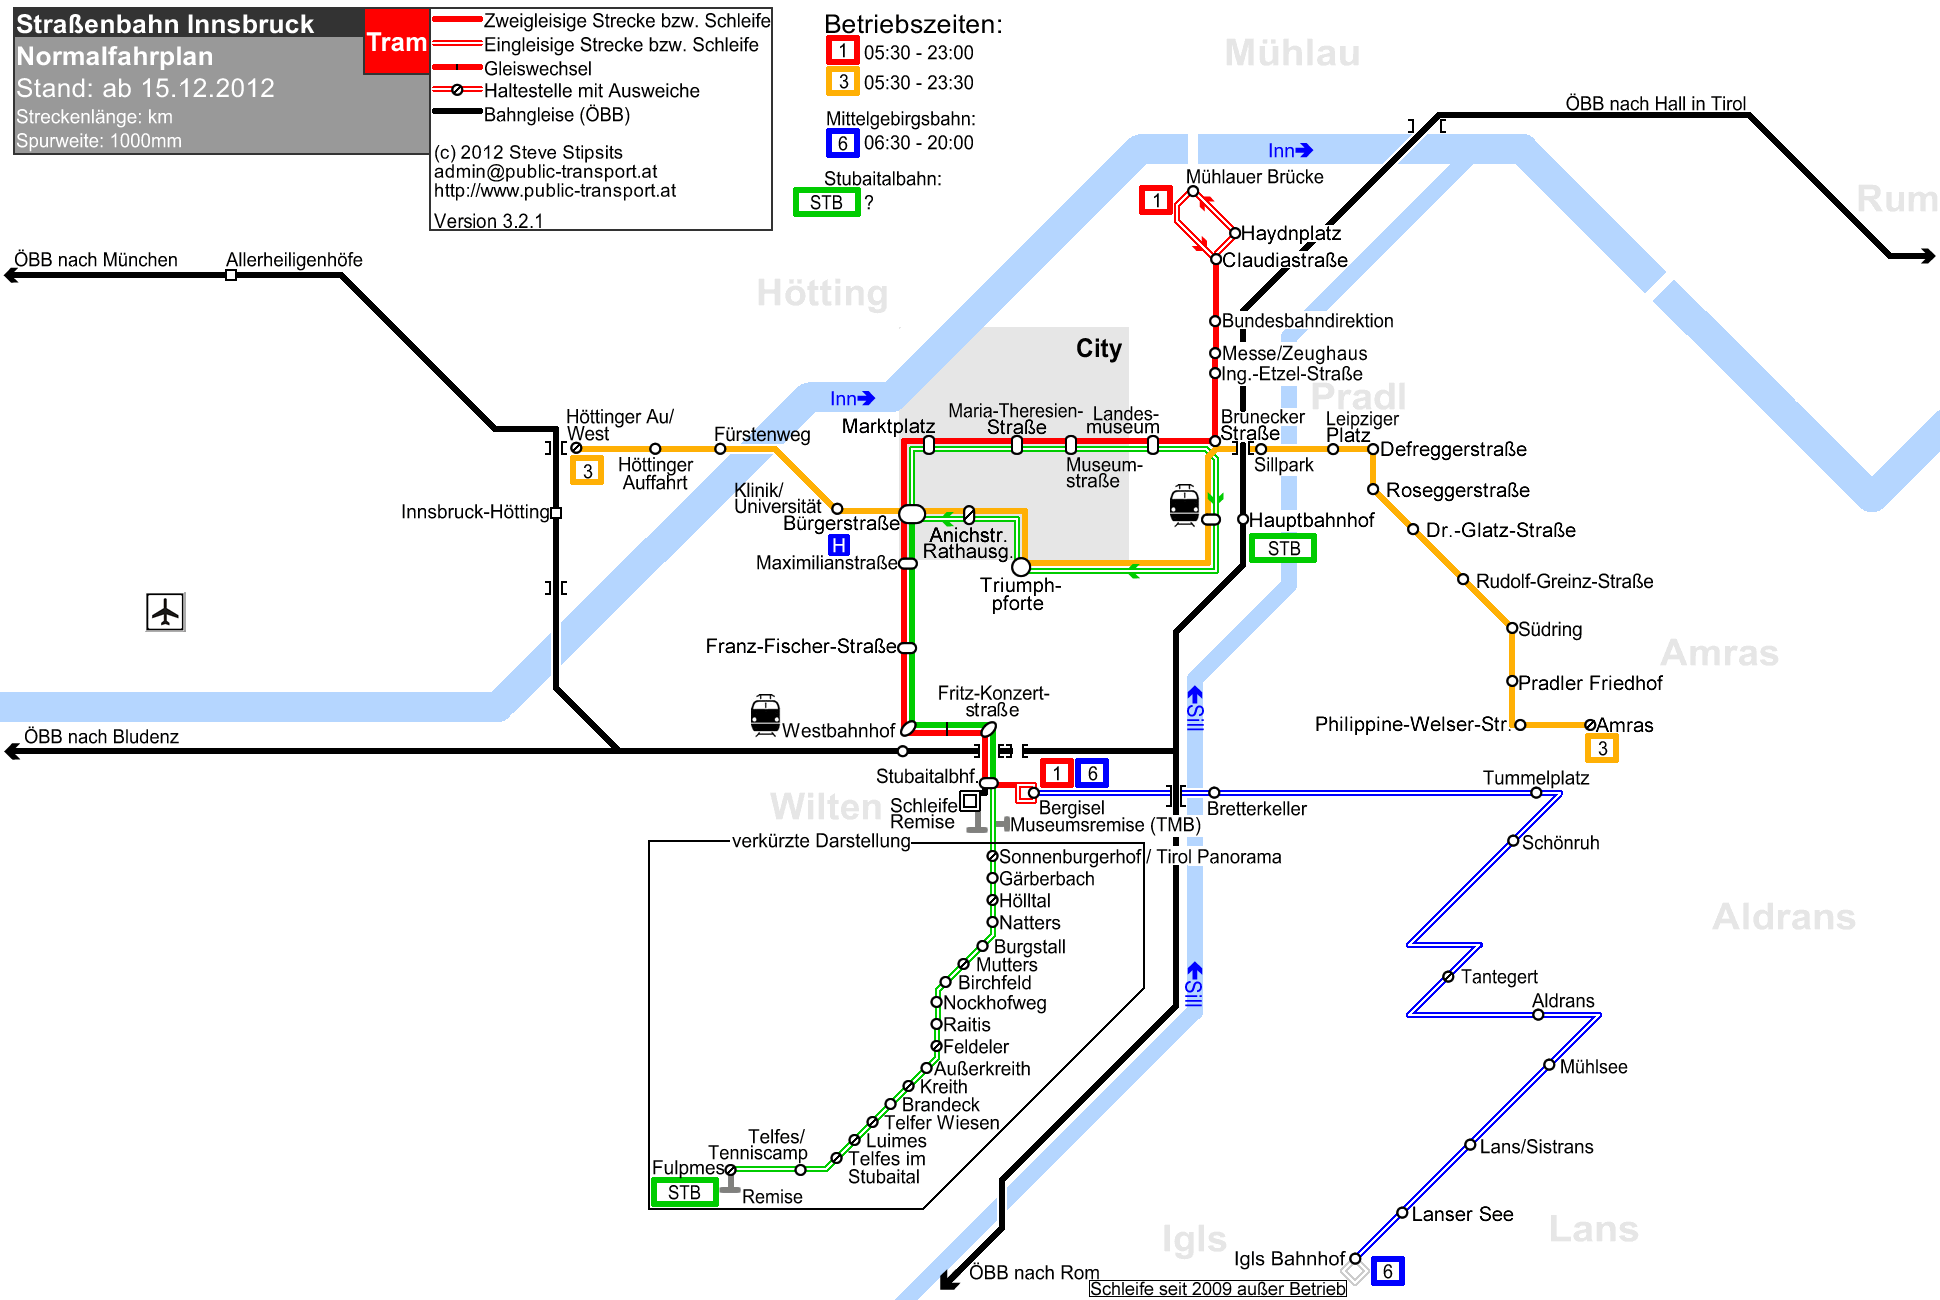 Транспорт по городу Инсбрук - схема маршрутов трамваев по Инсбруку